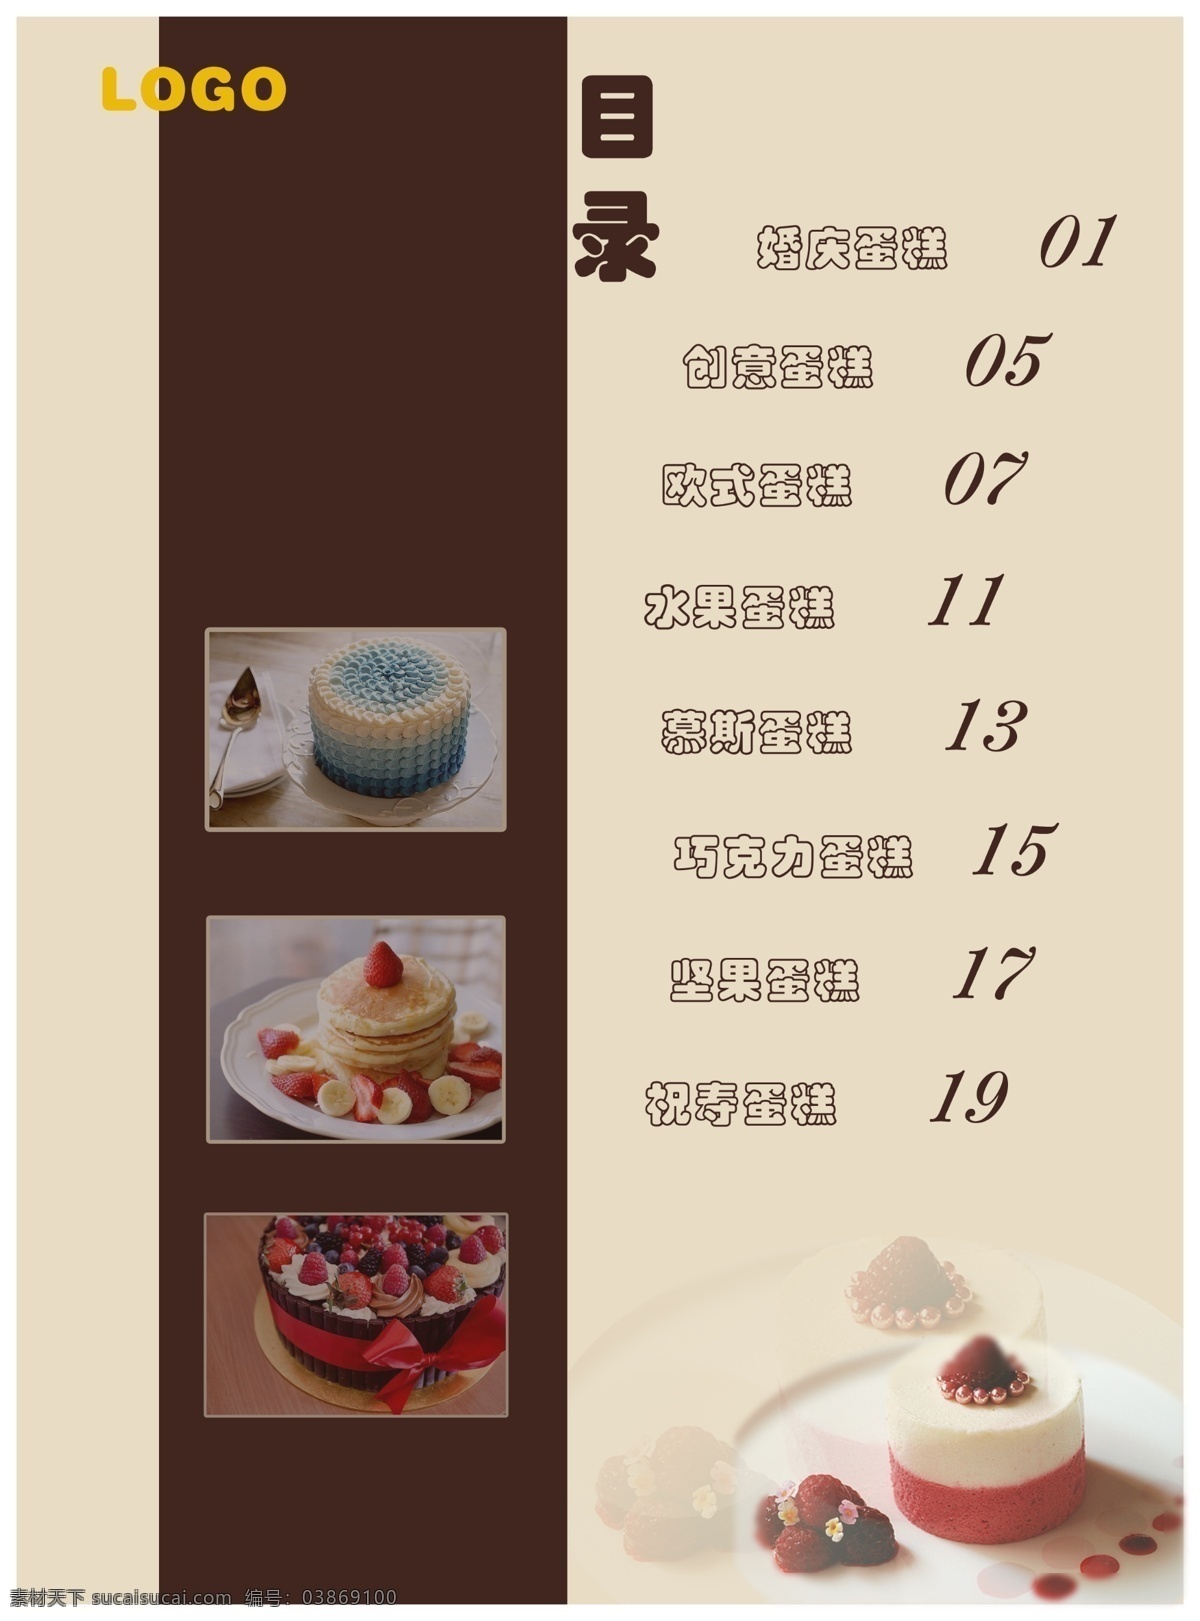 蛋糕 图册 高清 目录 文件 logo 欧式蛋糕 巧克力蛋糕 水果蛋糕 祝寿蛋糕 坚果蛋糕 矢量图 阿片 原创设计 原创海报